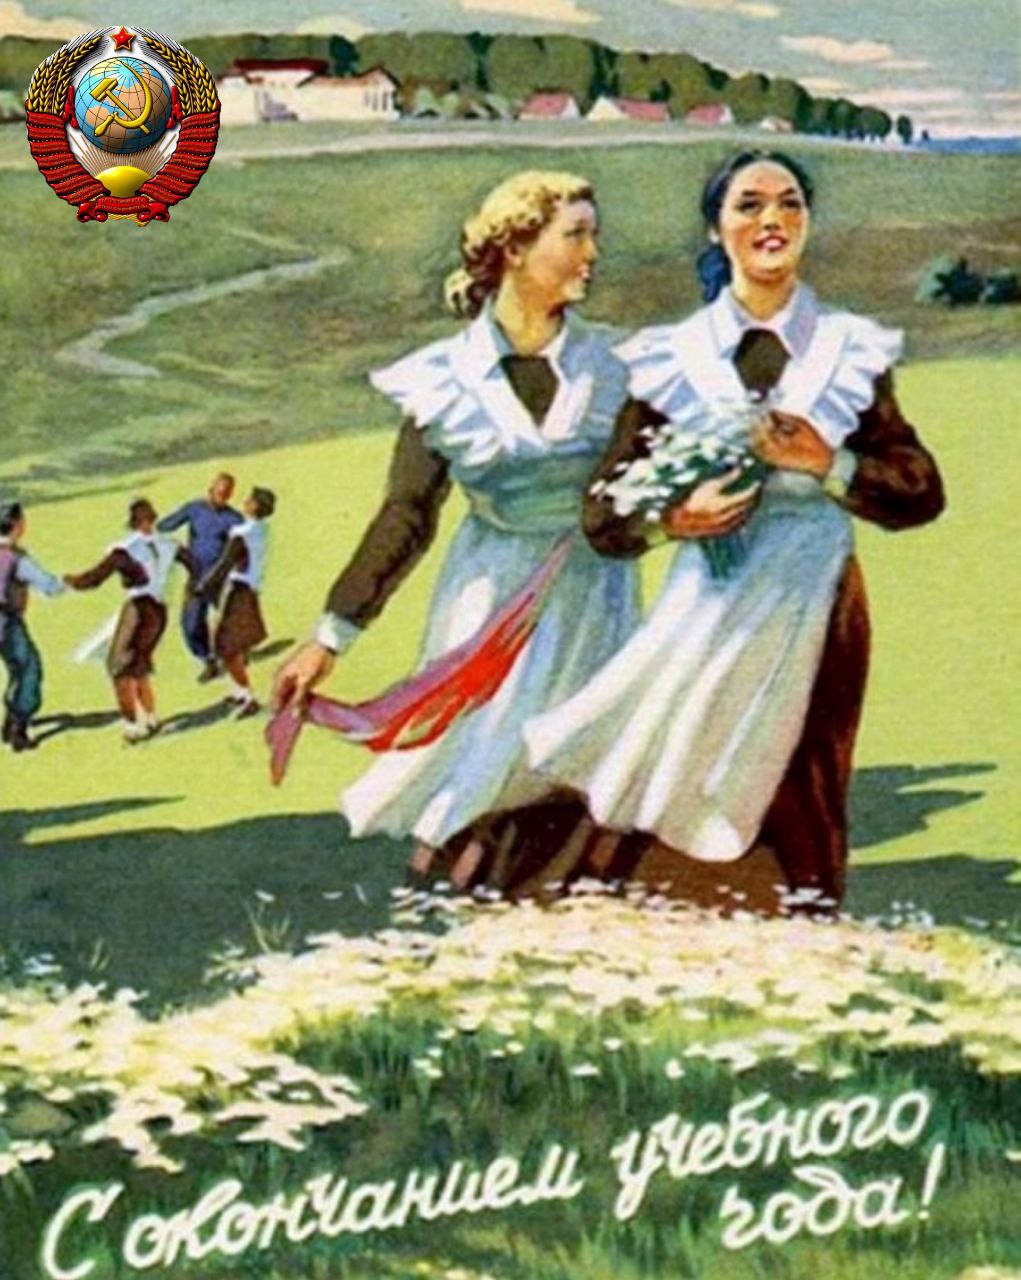 Последний звонок открытки советские